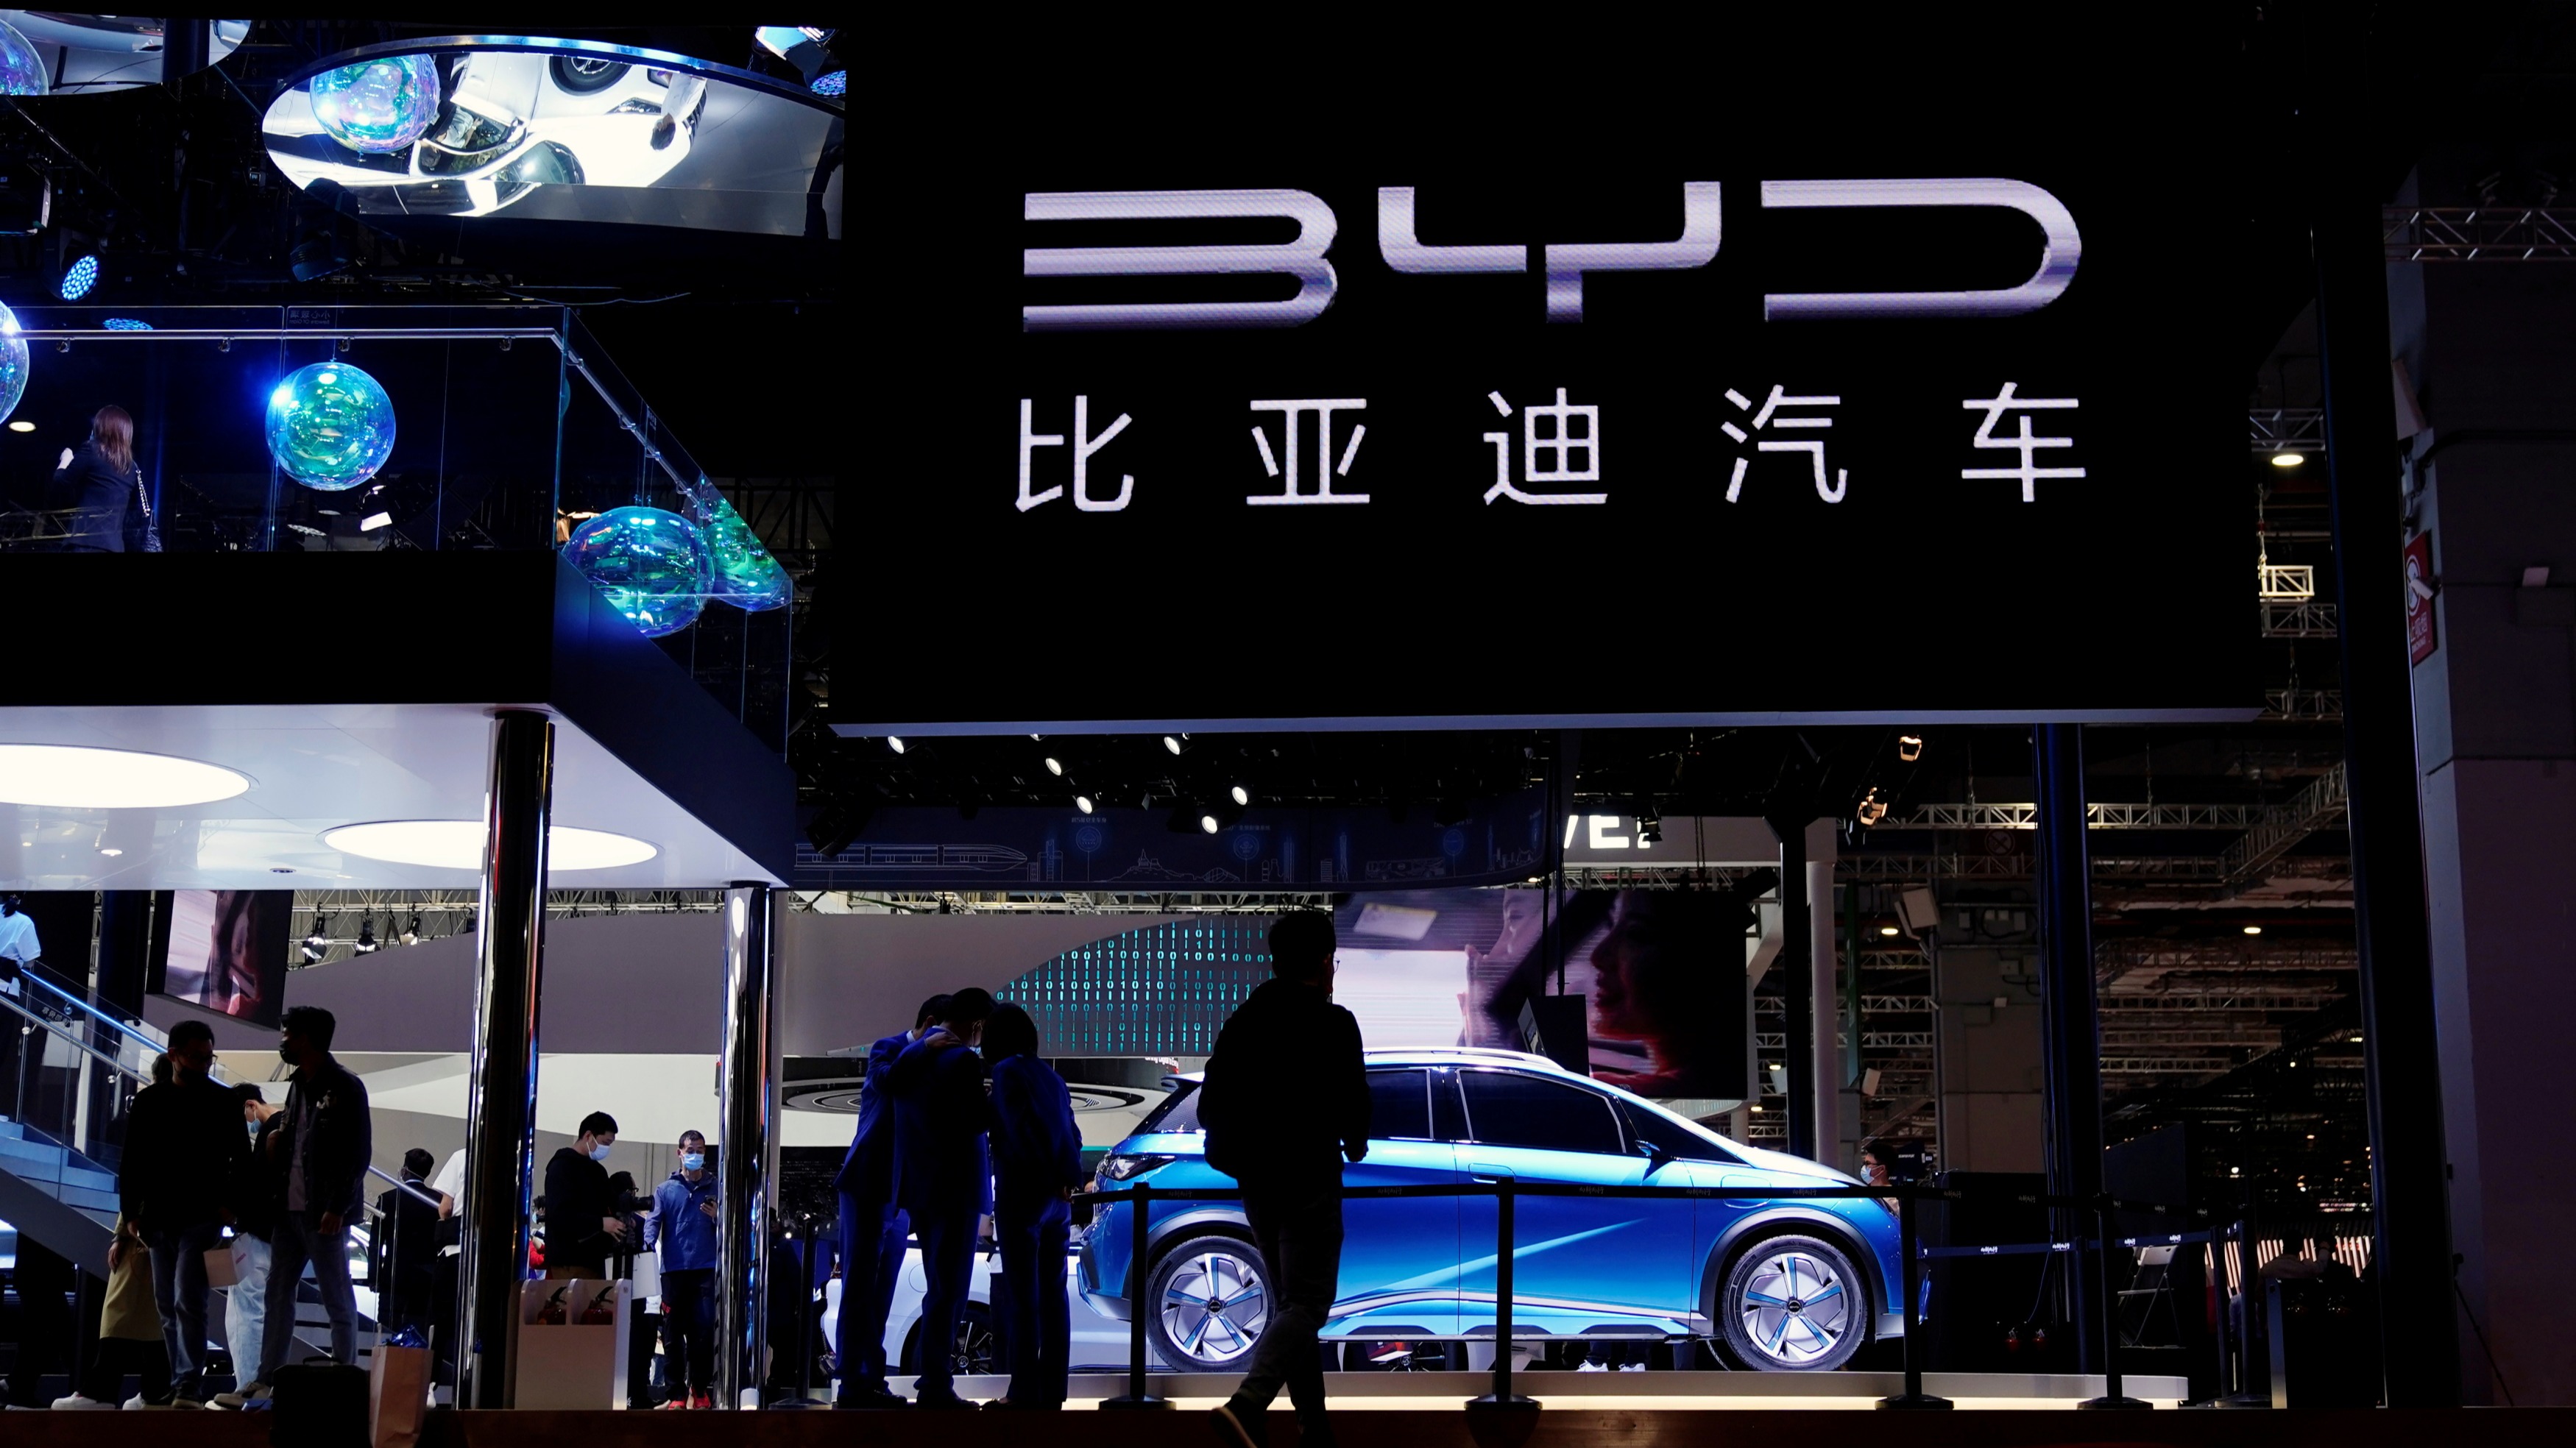 比亚迪、小鹏、理想、极氪、广汽埃安等中国车企将采用 Nvidia Drive Thor 芯片，以提高自动驾驶、人工智能技术